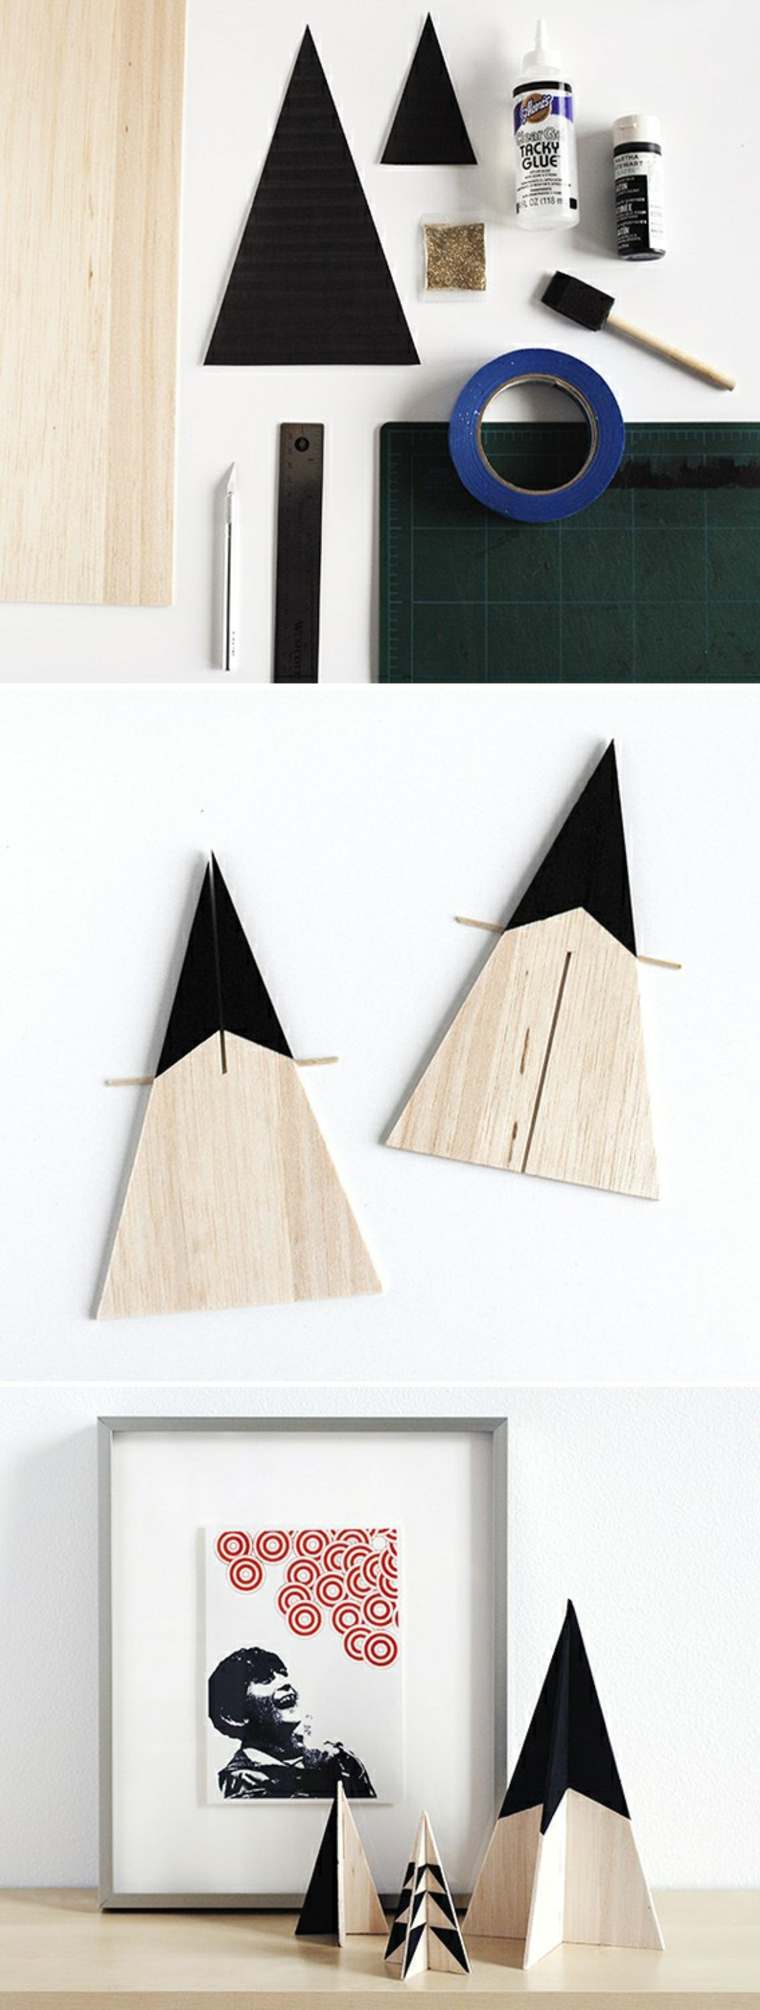 Décorations de Noël à fabriquer bois sapin idée originale pas cher déco minimaliste